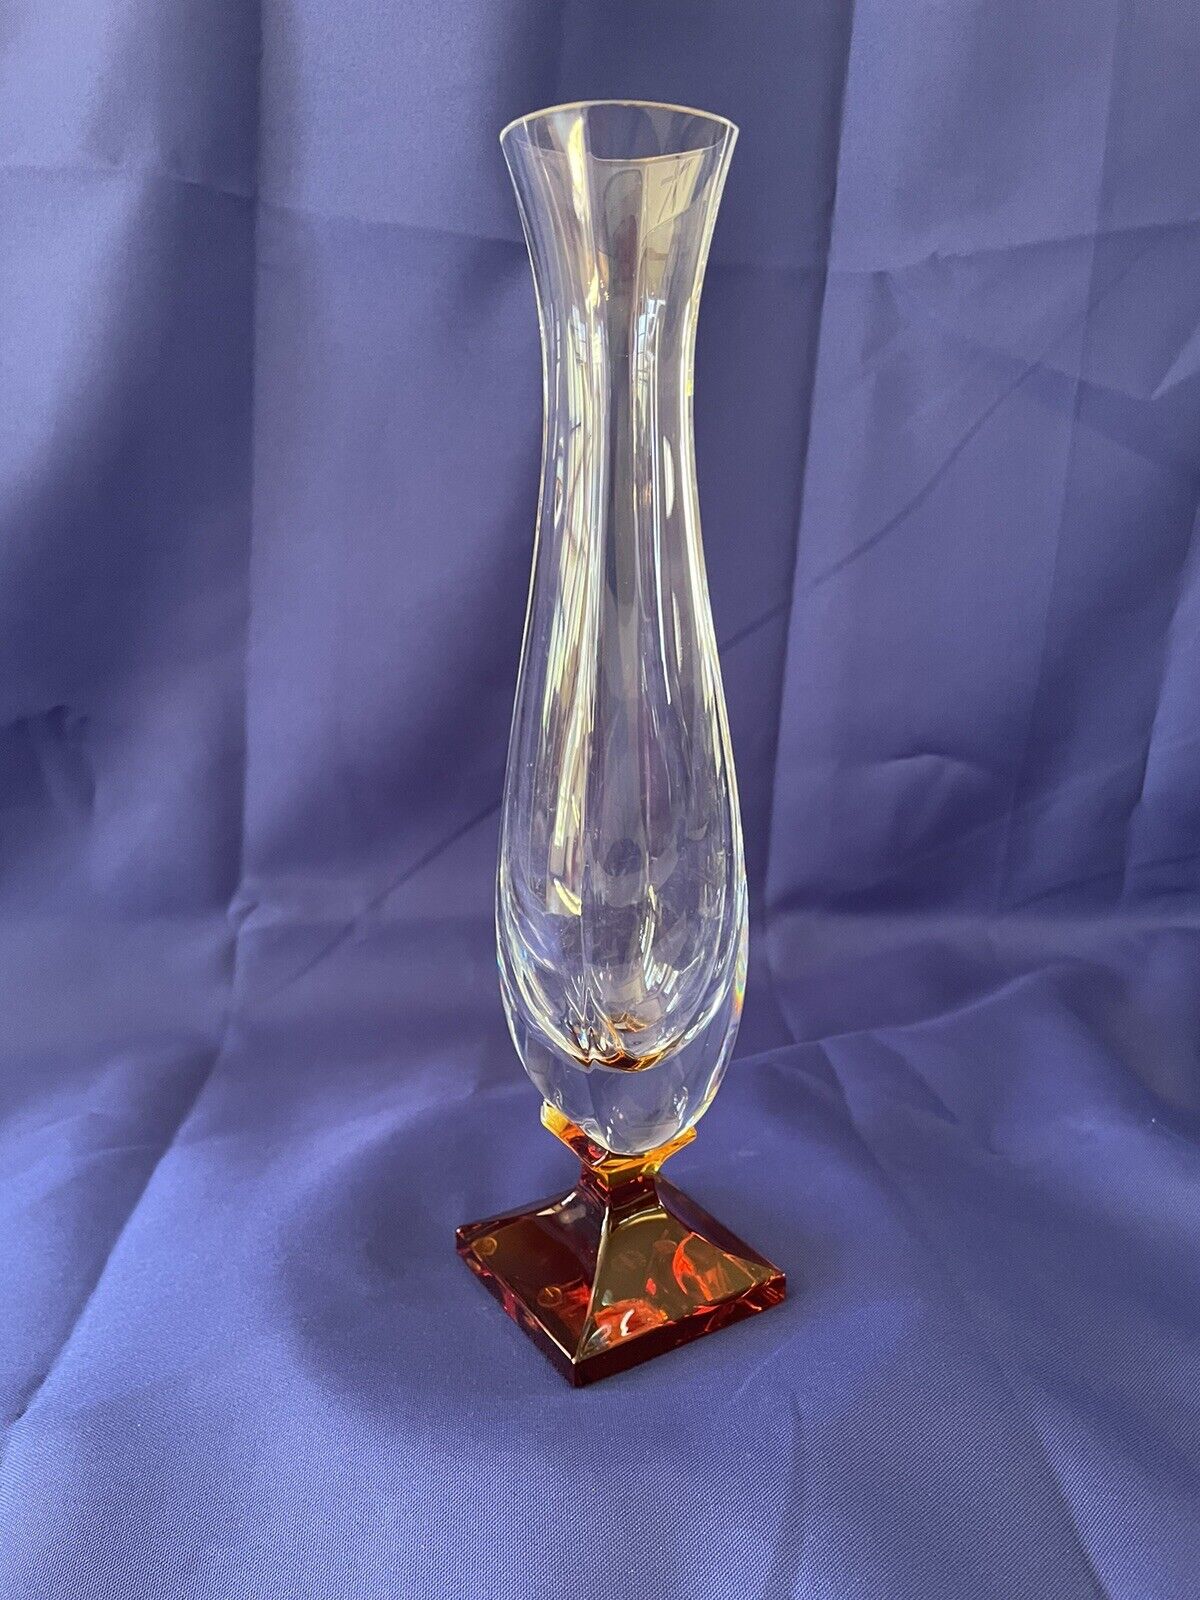 Vintage Sevres Cristal France Clear and Amber Pedestal Vase. Functional Art.